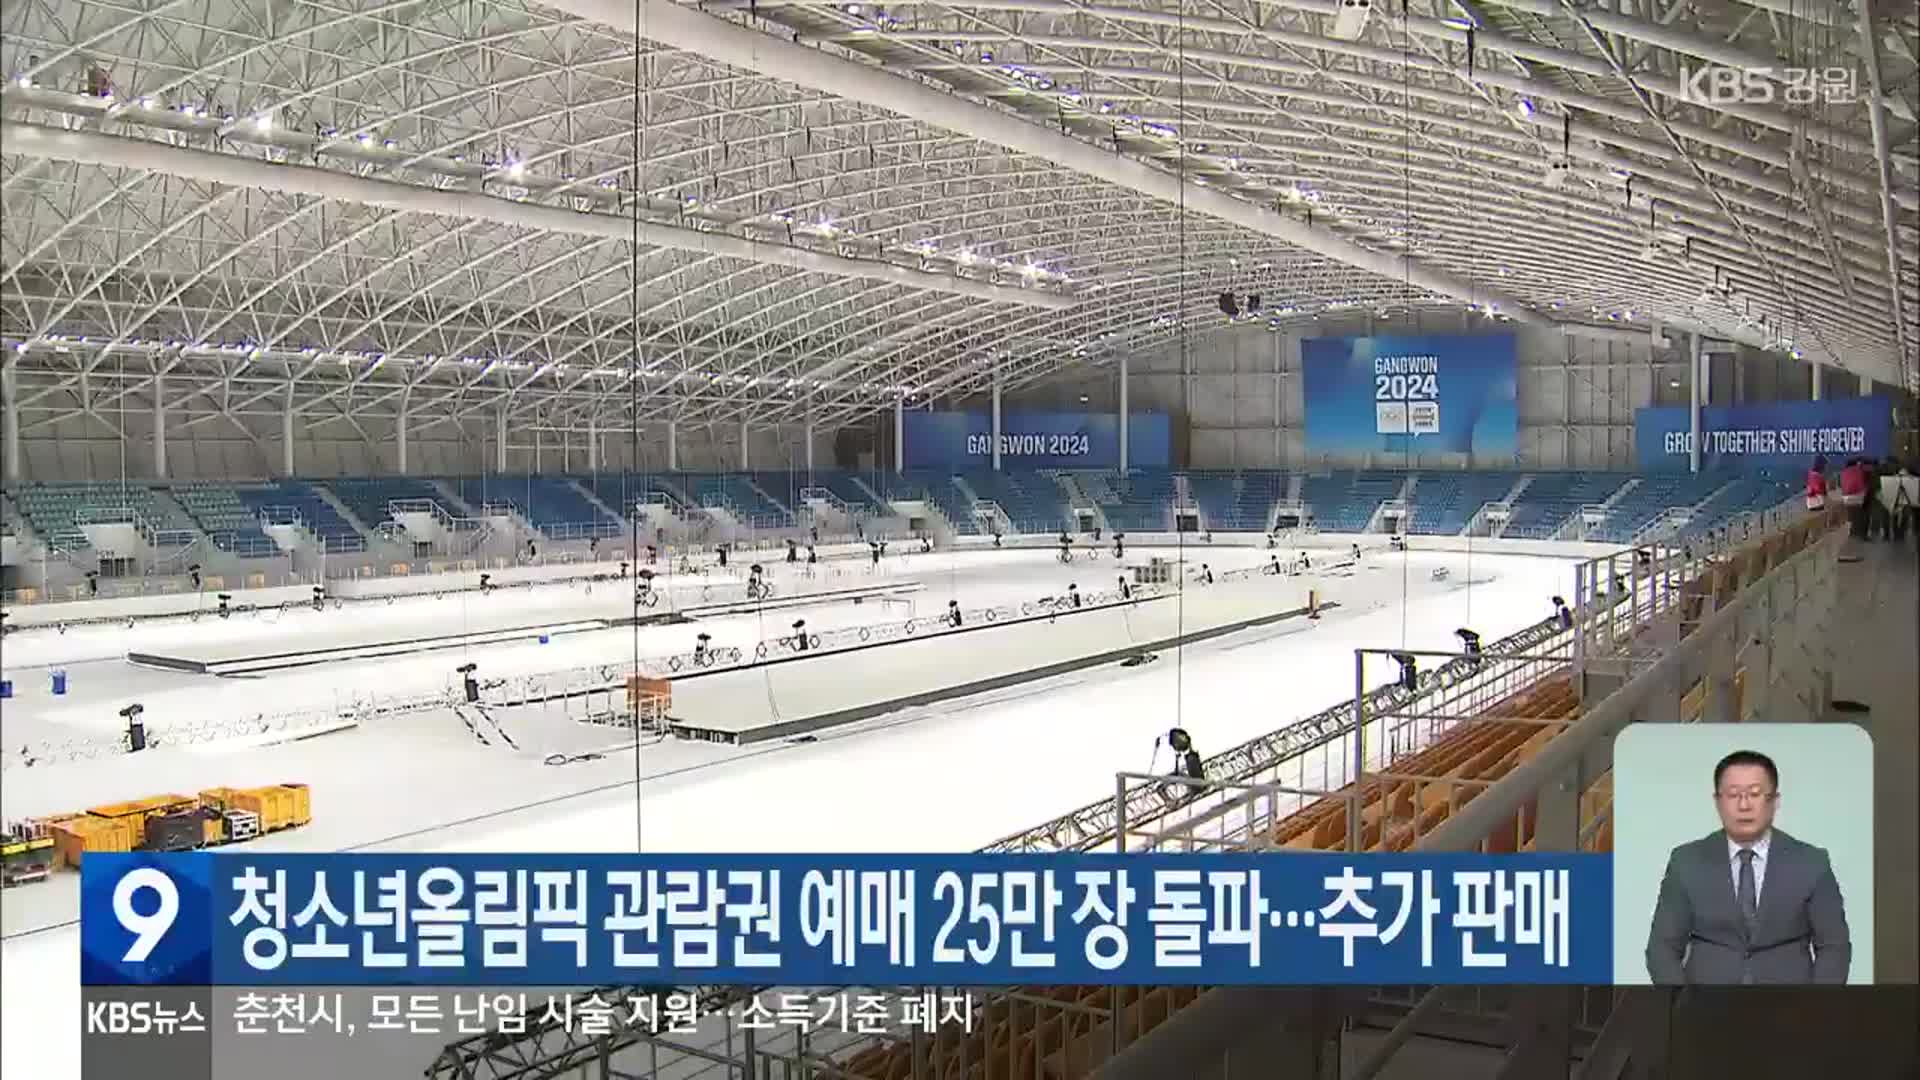 강원동계청소년올림픽 관람권 예매 25만 장 돌파…추가 판매